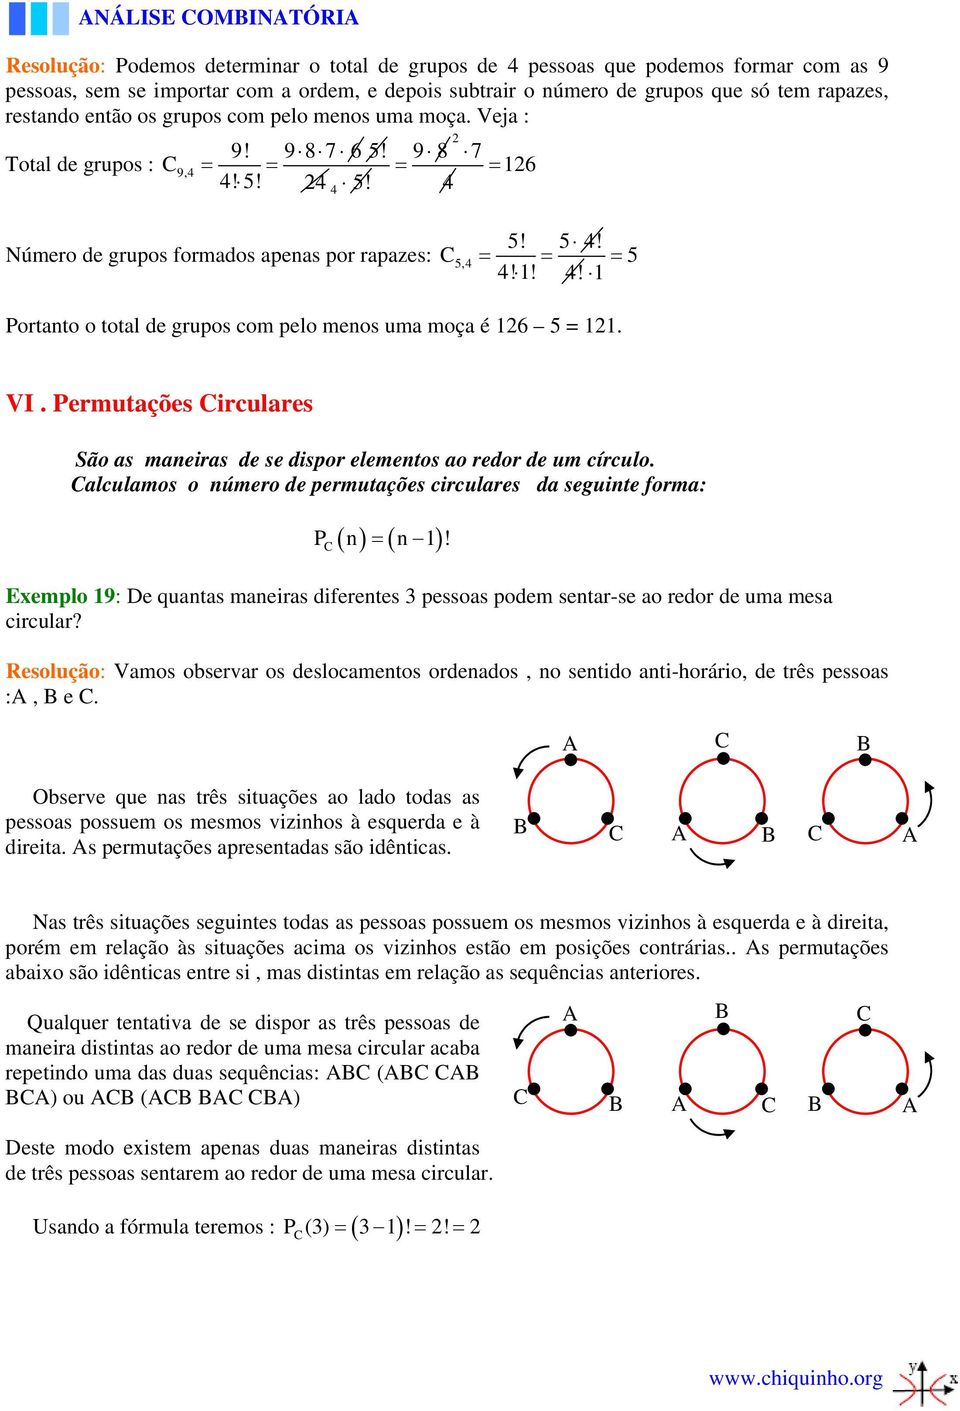 VI. Permutações irculares São as maneiras de se dispor elementos ao redor de um círculo. alculamos o número de permutações circulares da seguinte forma: ( ) = ( ) P n n 1!